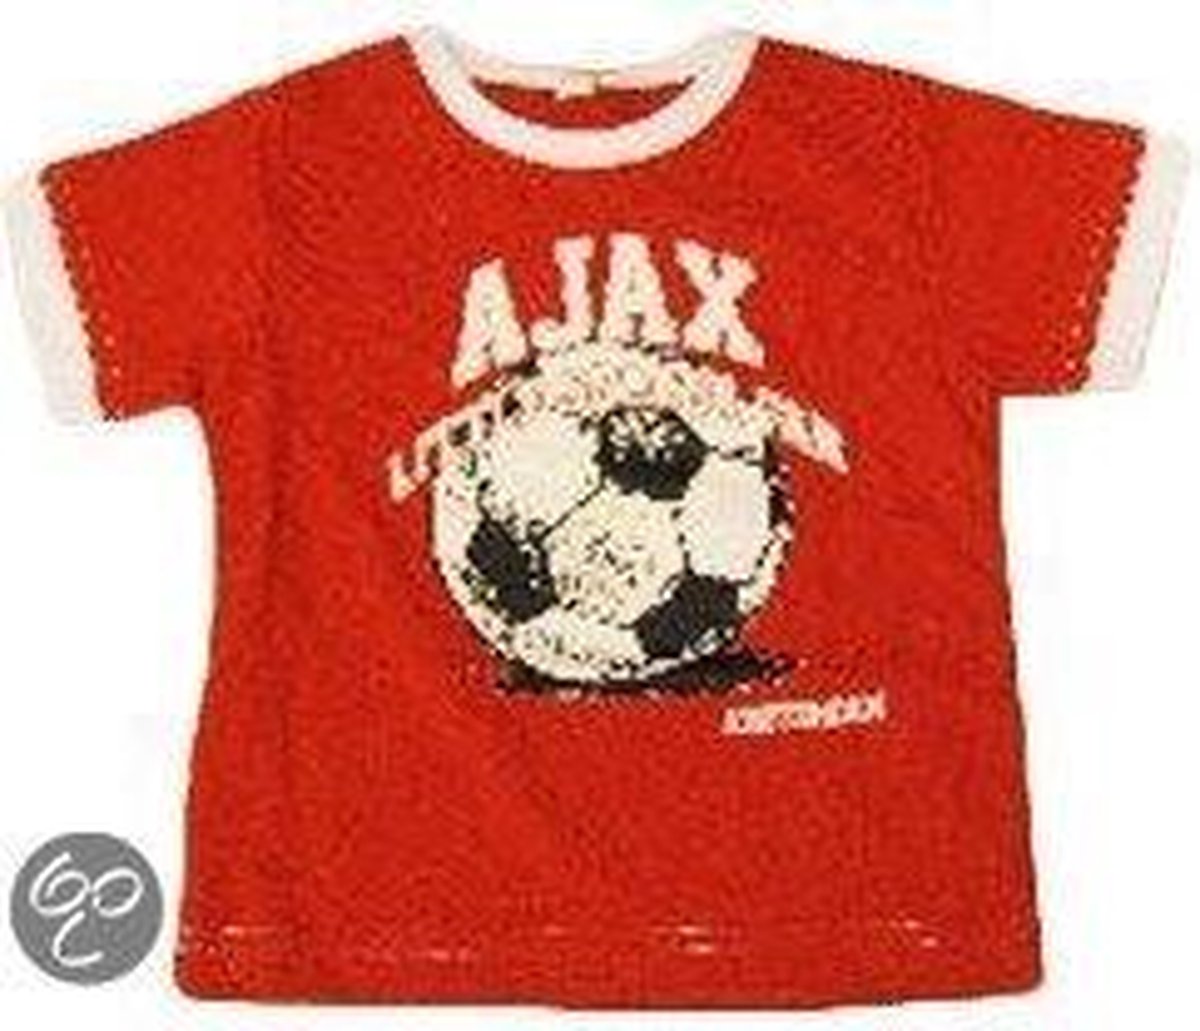 Ajax Thuisshirt Junior - Voetbalshirt - Kinderen - Maat 62/68 - Rood